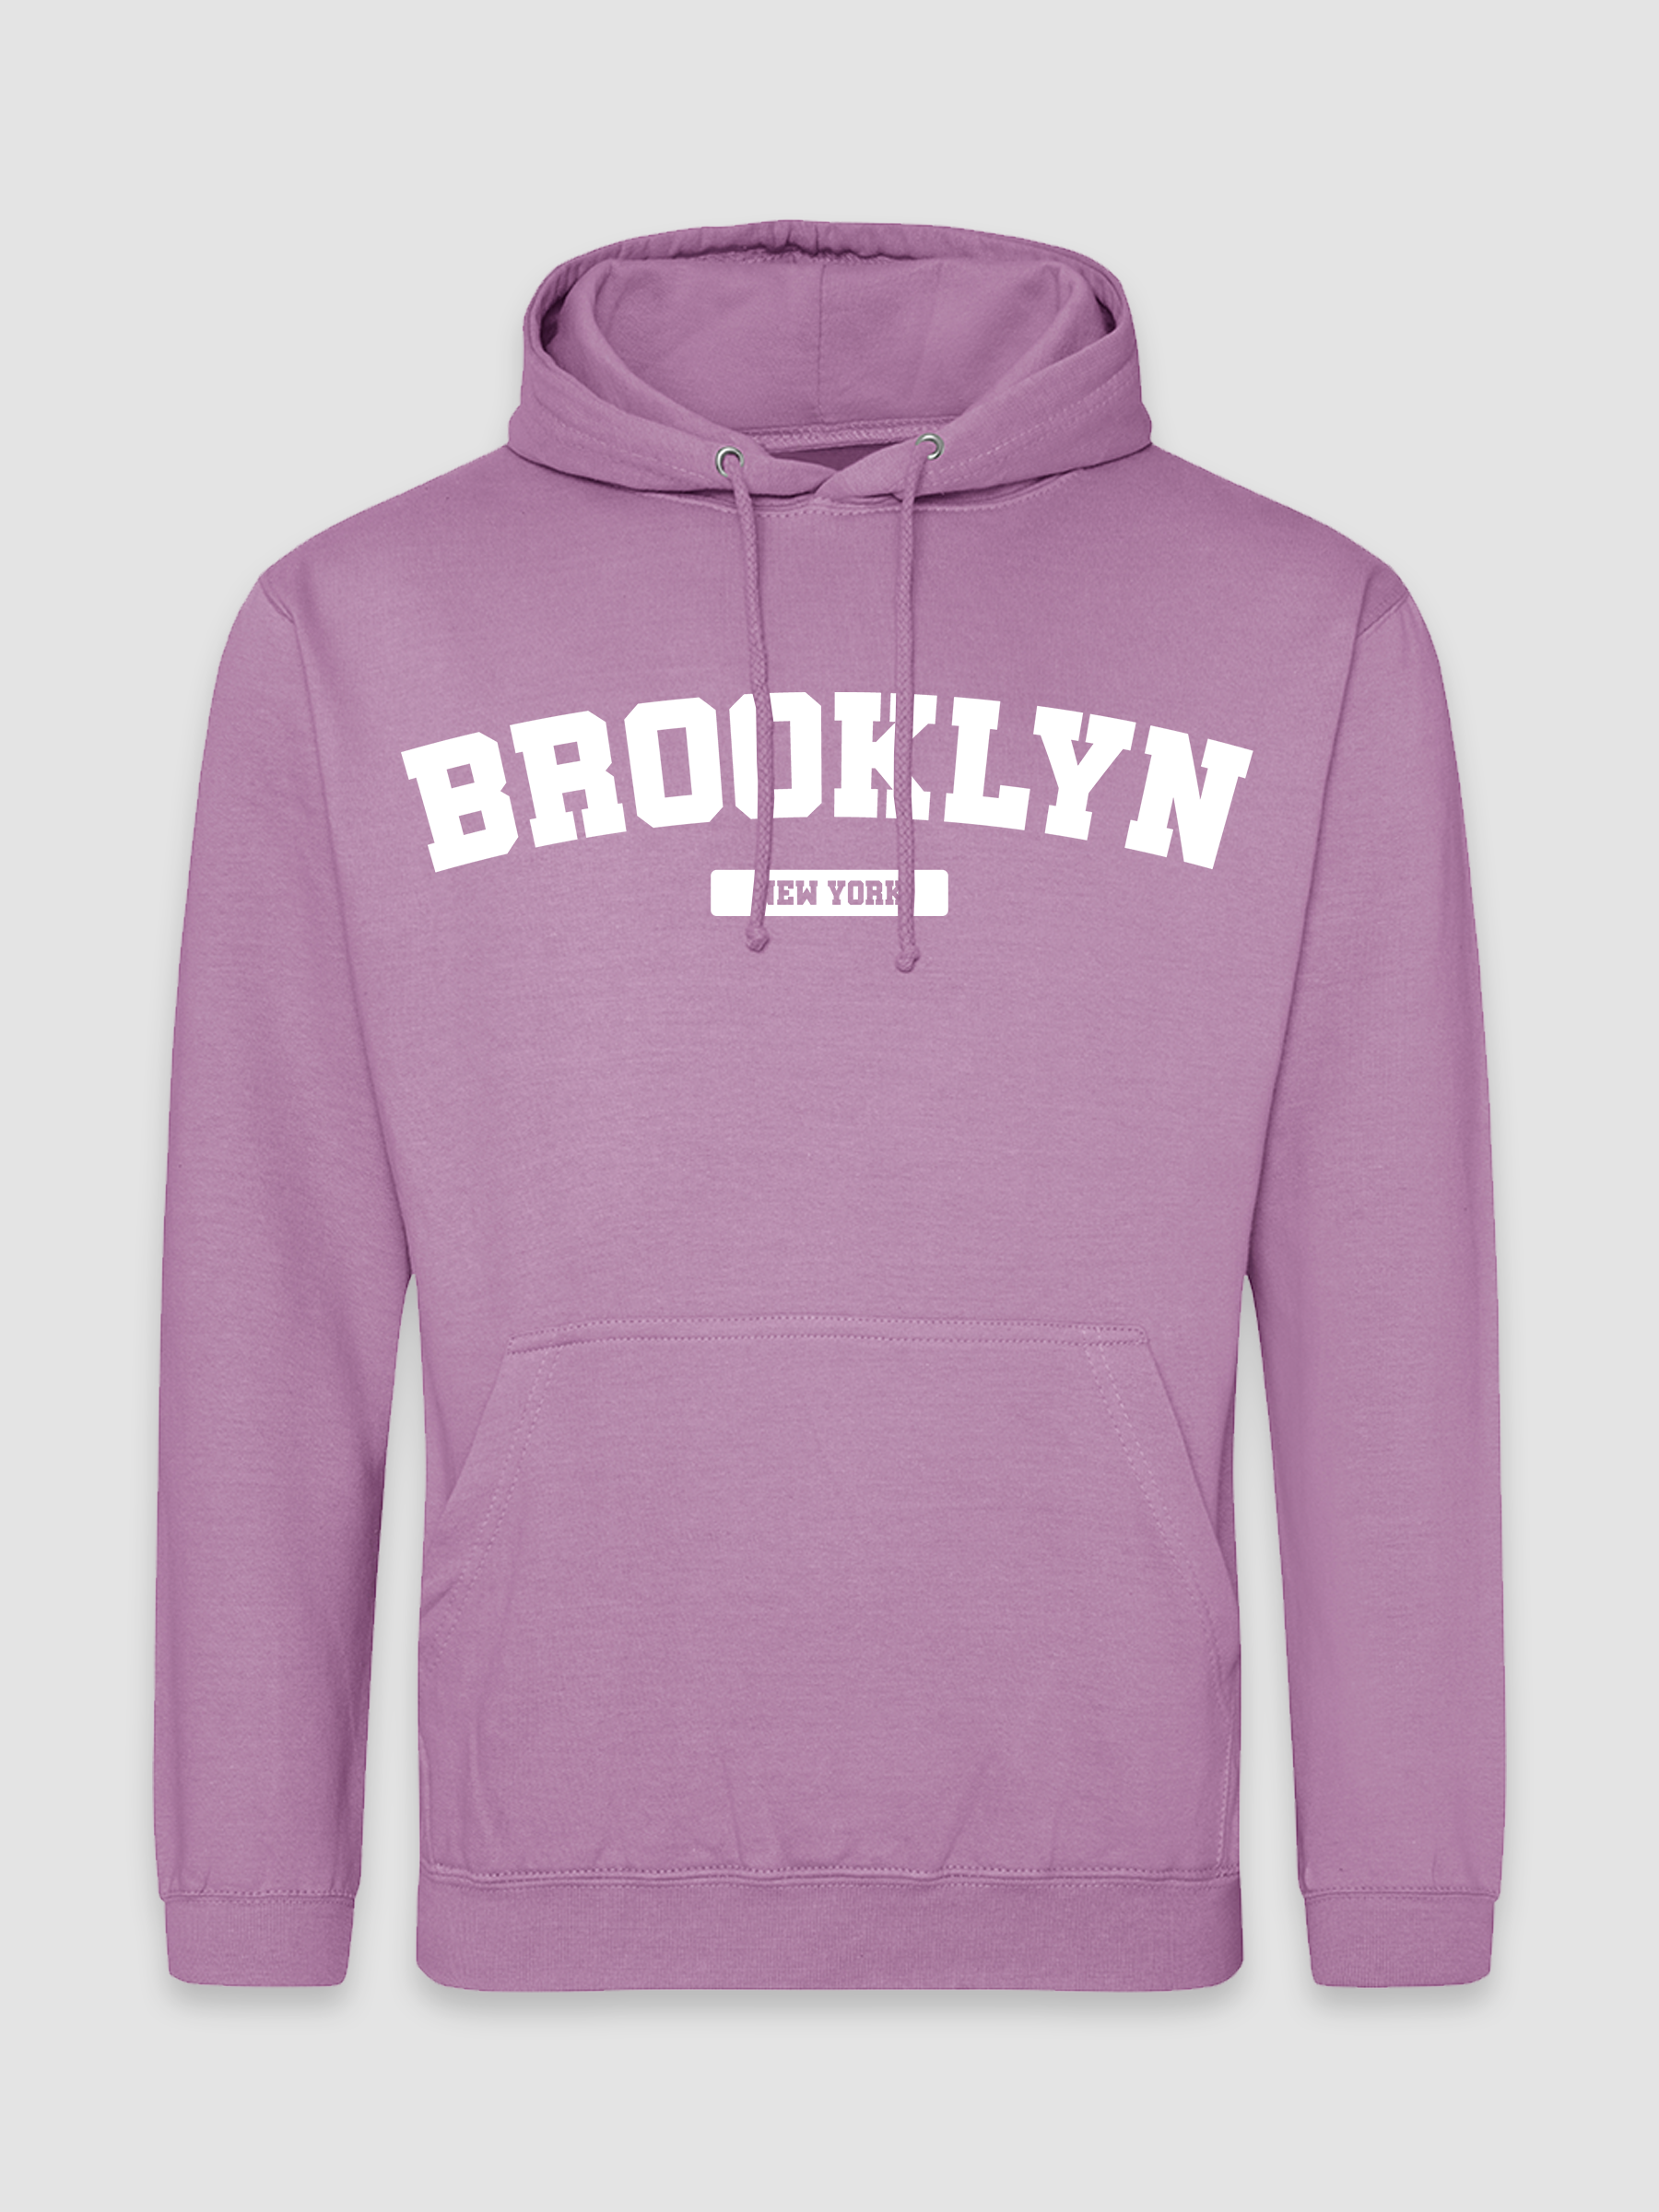 Brooklyn - Navy Hoodie